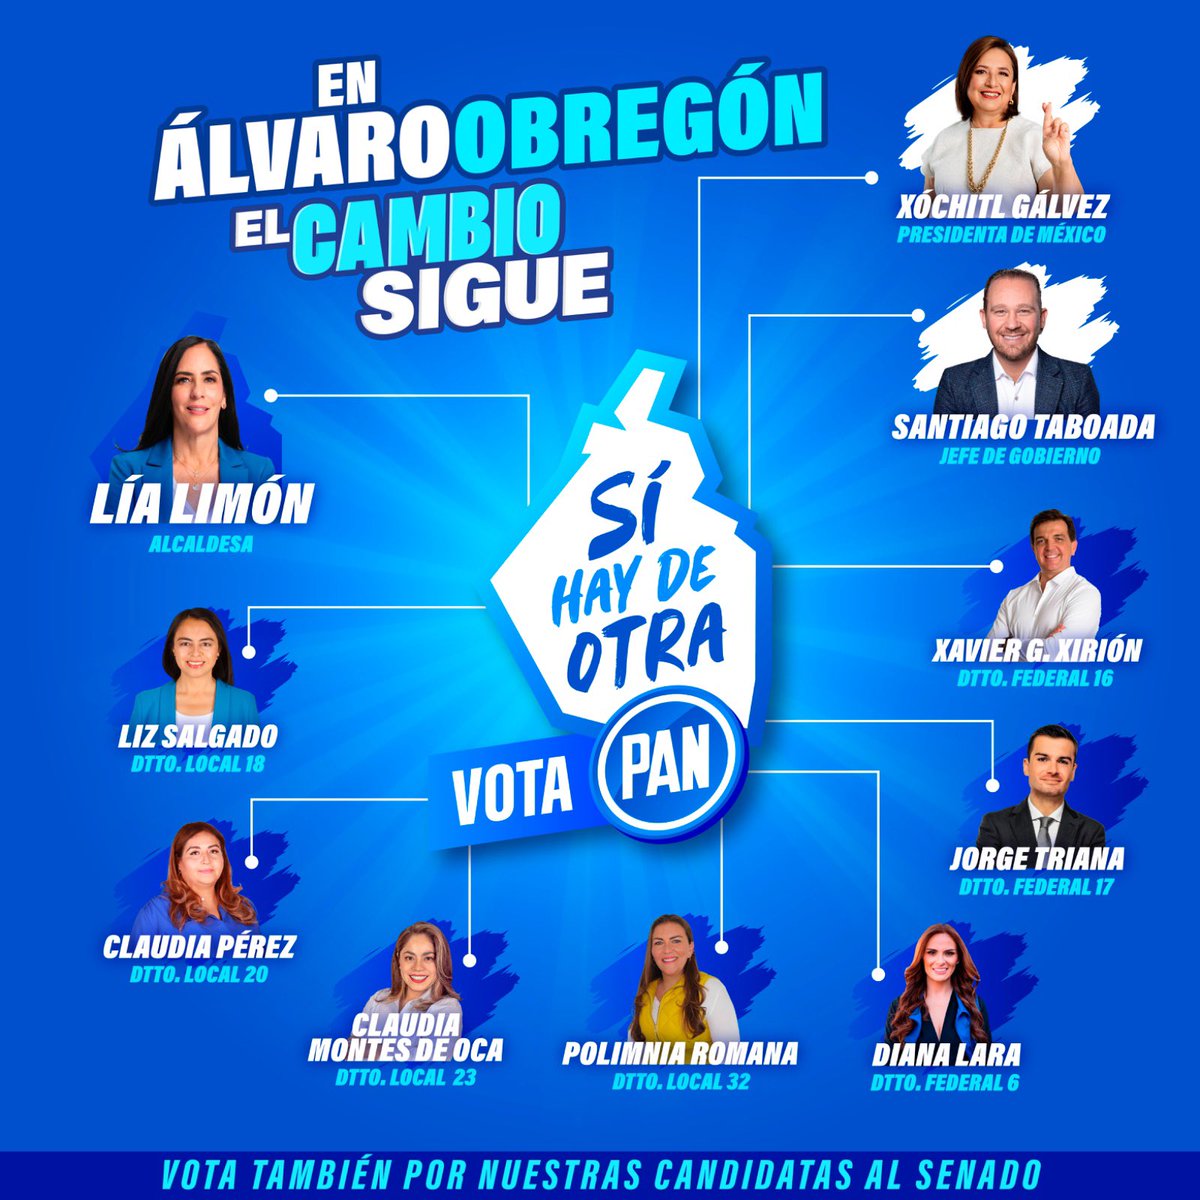 ¡En Álvaro Obregón #ElCambioSigue! Conoce a tus candidatas y candidatos y este 2 de junio #VotaPAN en todas las boletas. #SíHayDeOtra